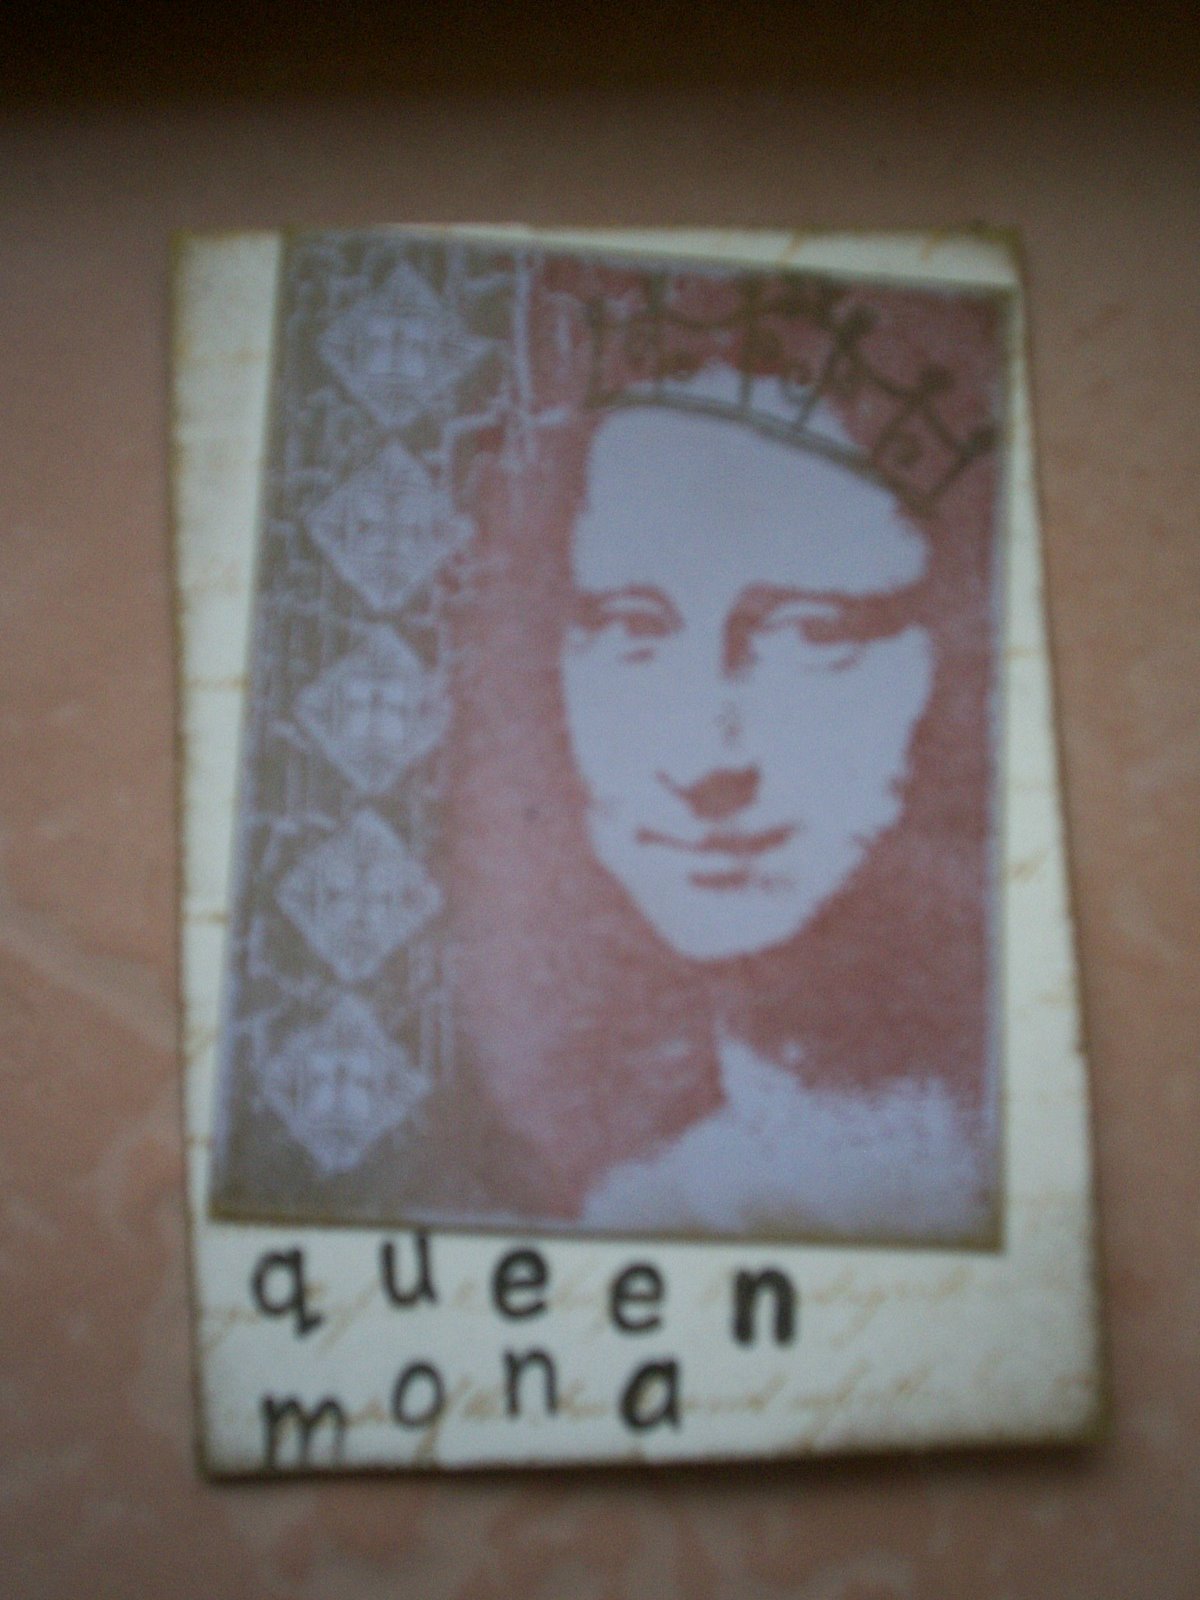 [queen+mona.jpg]